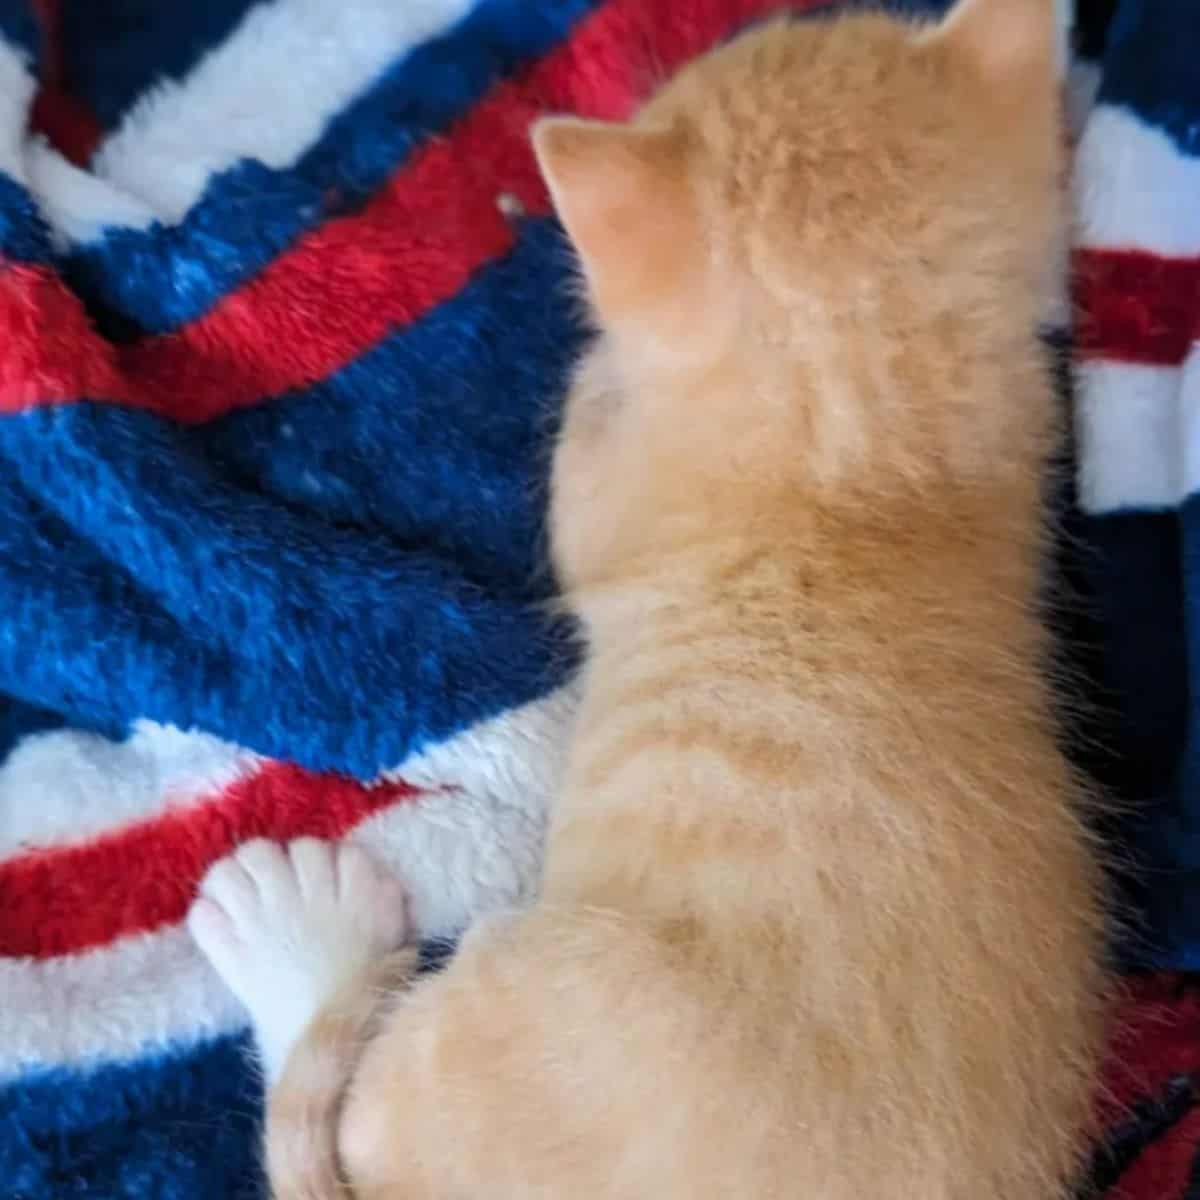 kitten on the towel